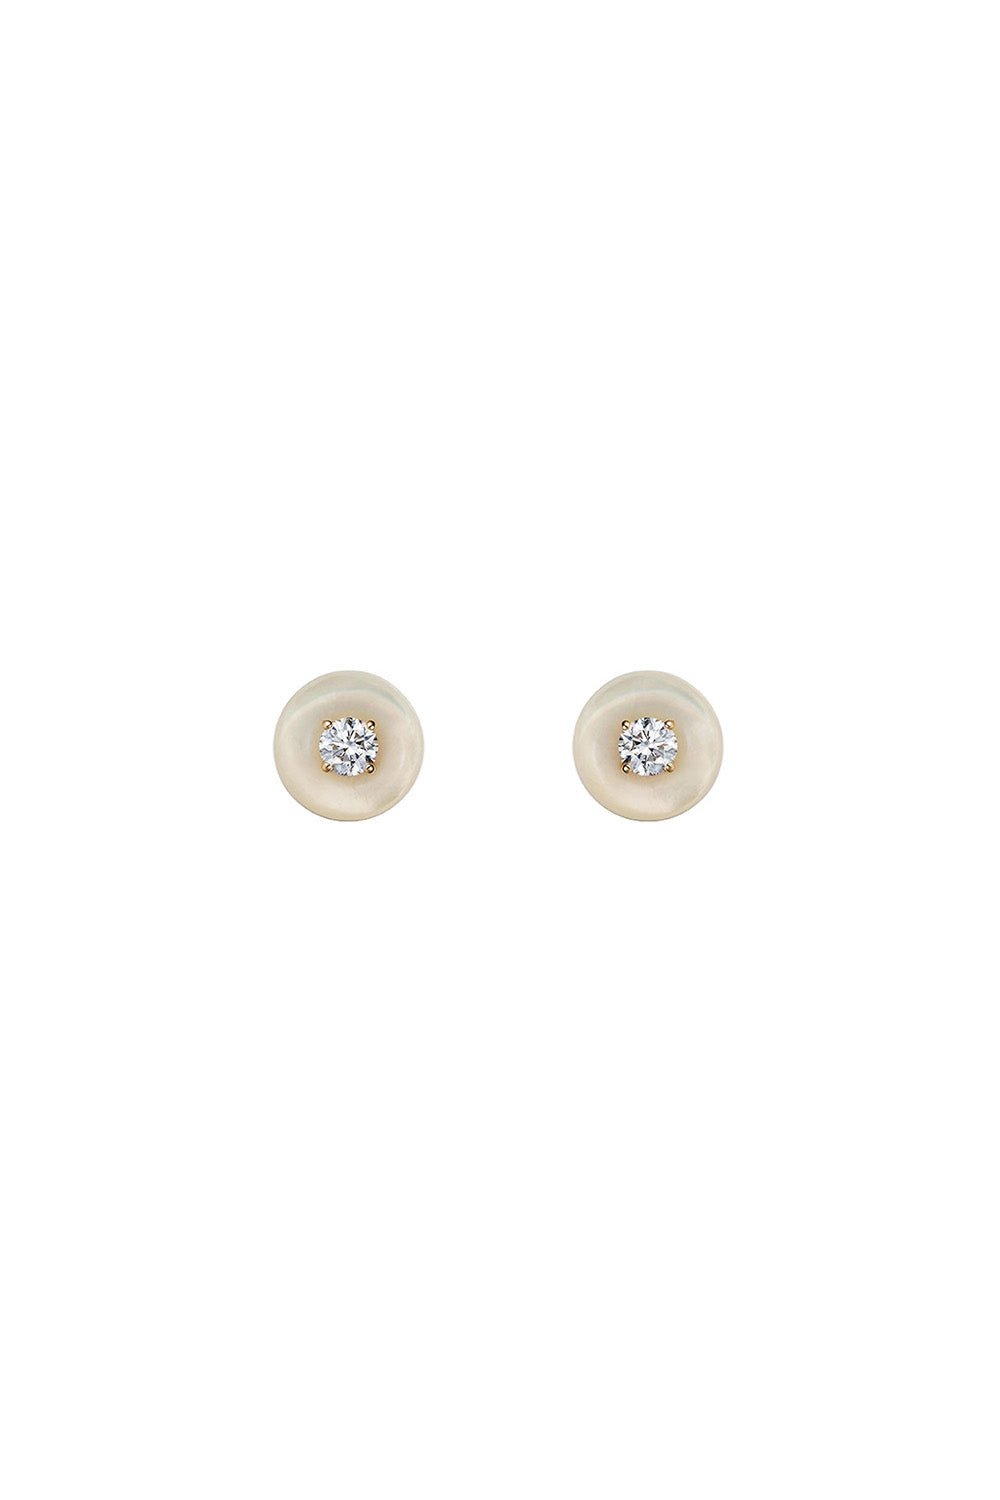 Small Orbit Pearl Stud Earrings JEWELRYFINE JEWELEARRING FERNANDO JORGE   